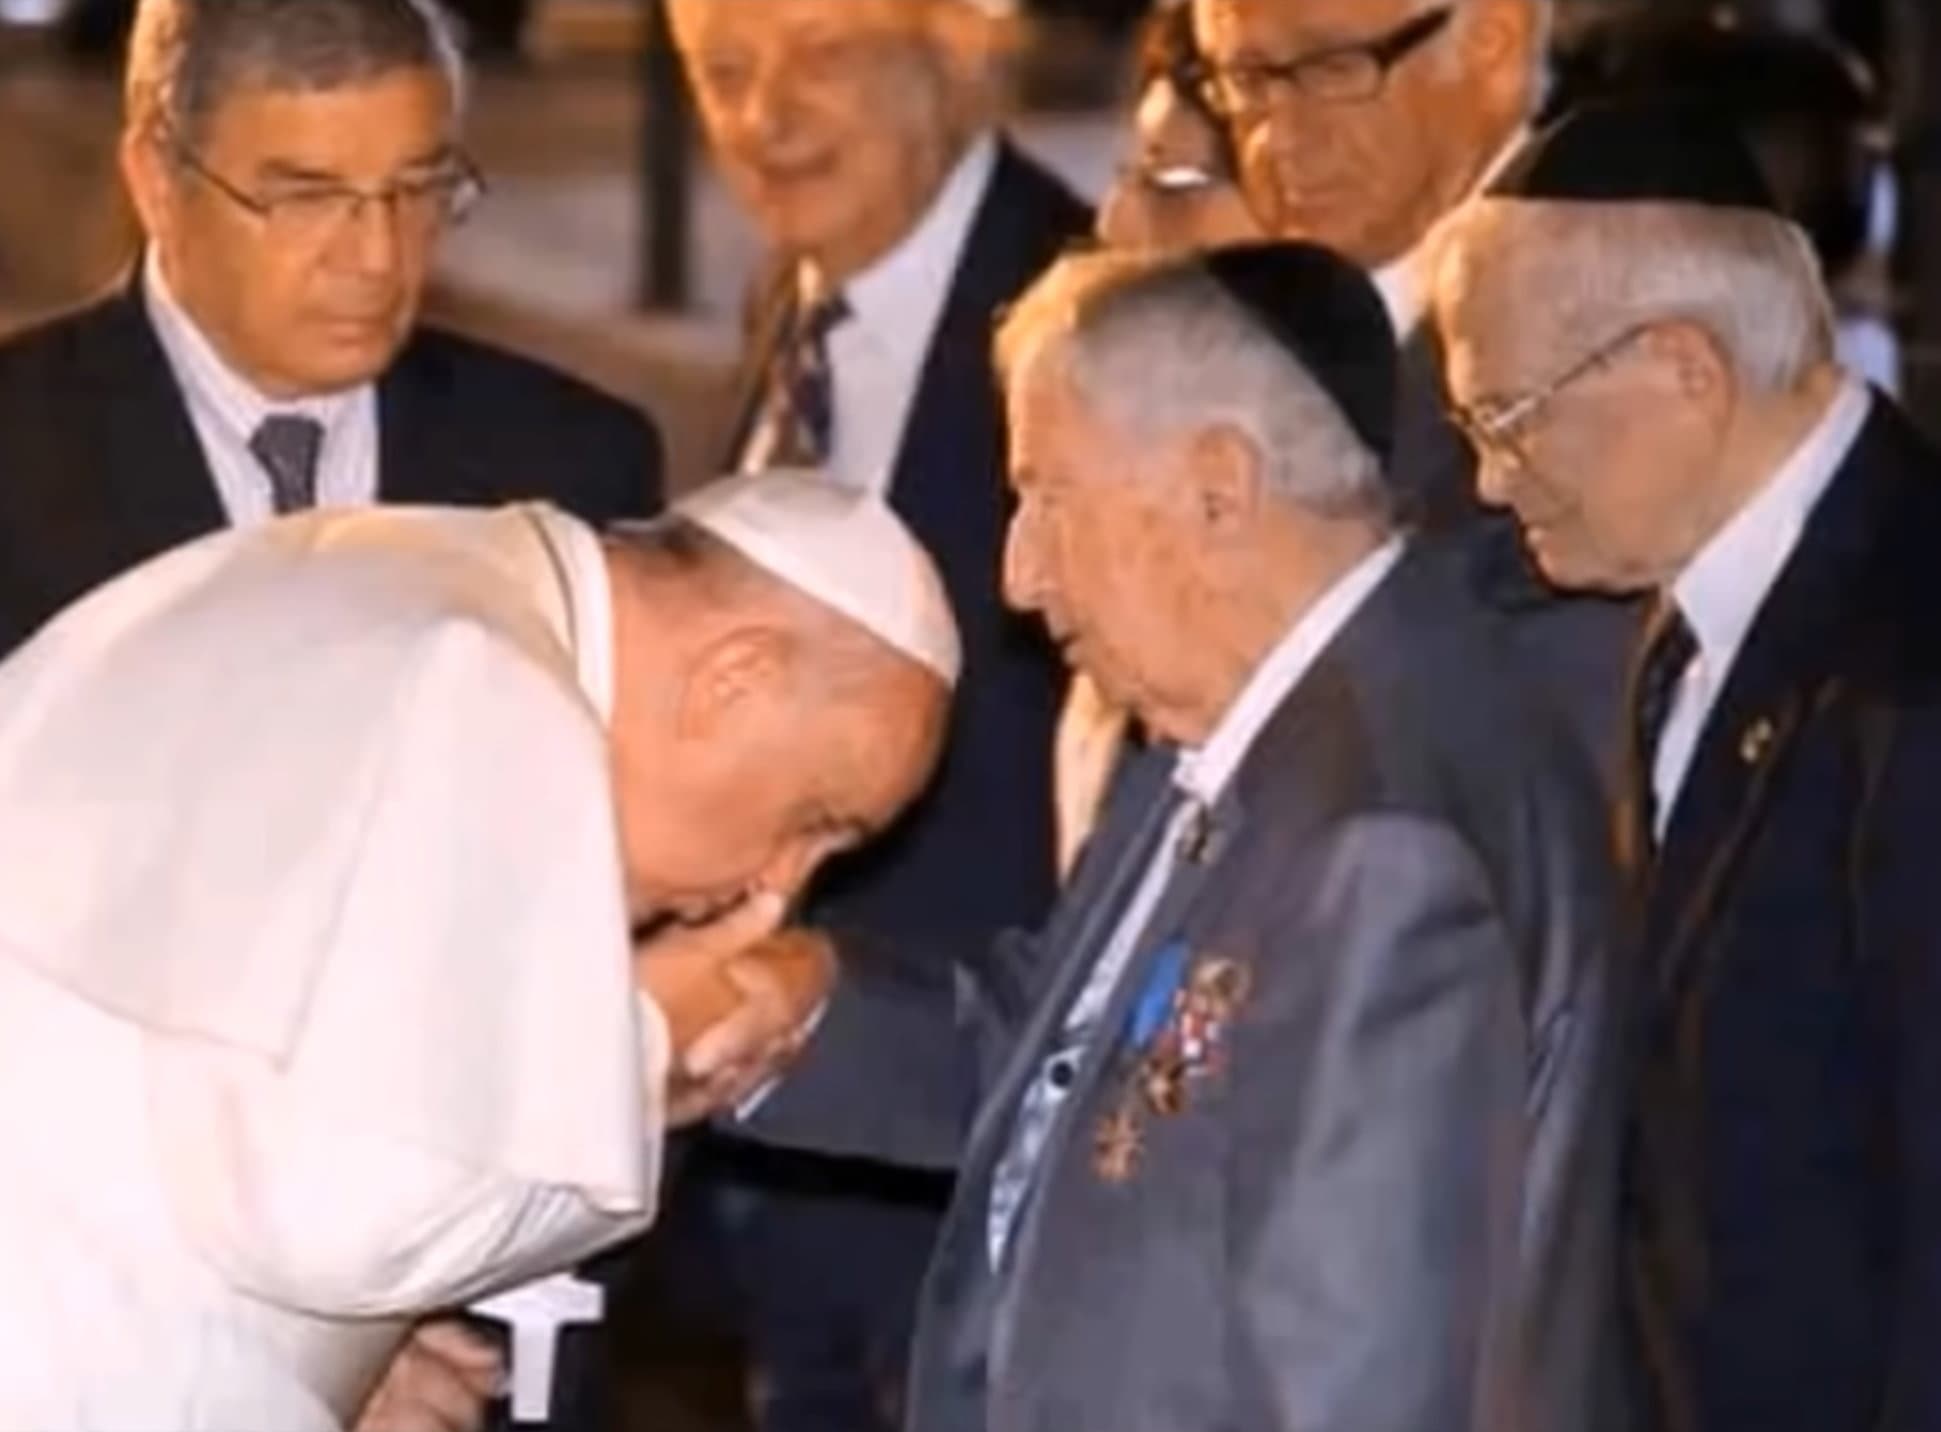 Papst Franziskus Handkuss Dienstherr Vorgesetzter Vatikan Misstrauen Falschheit